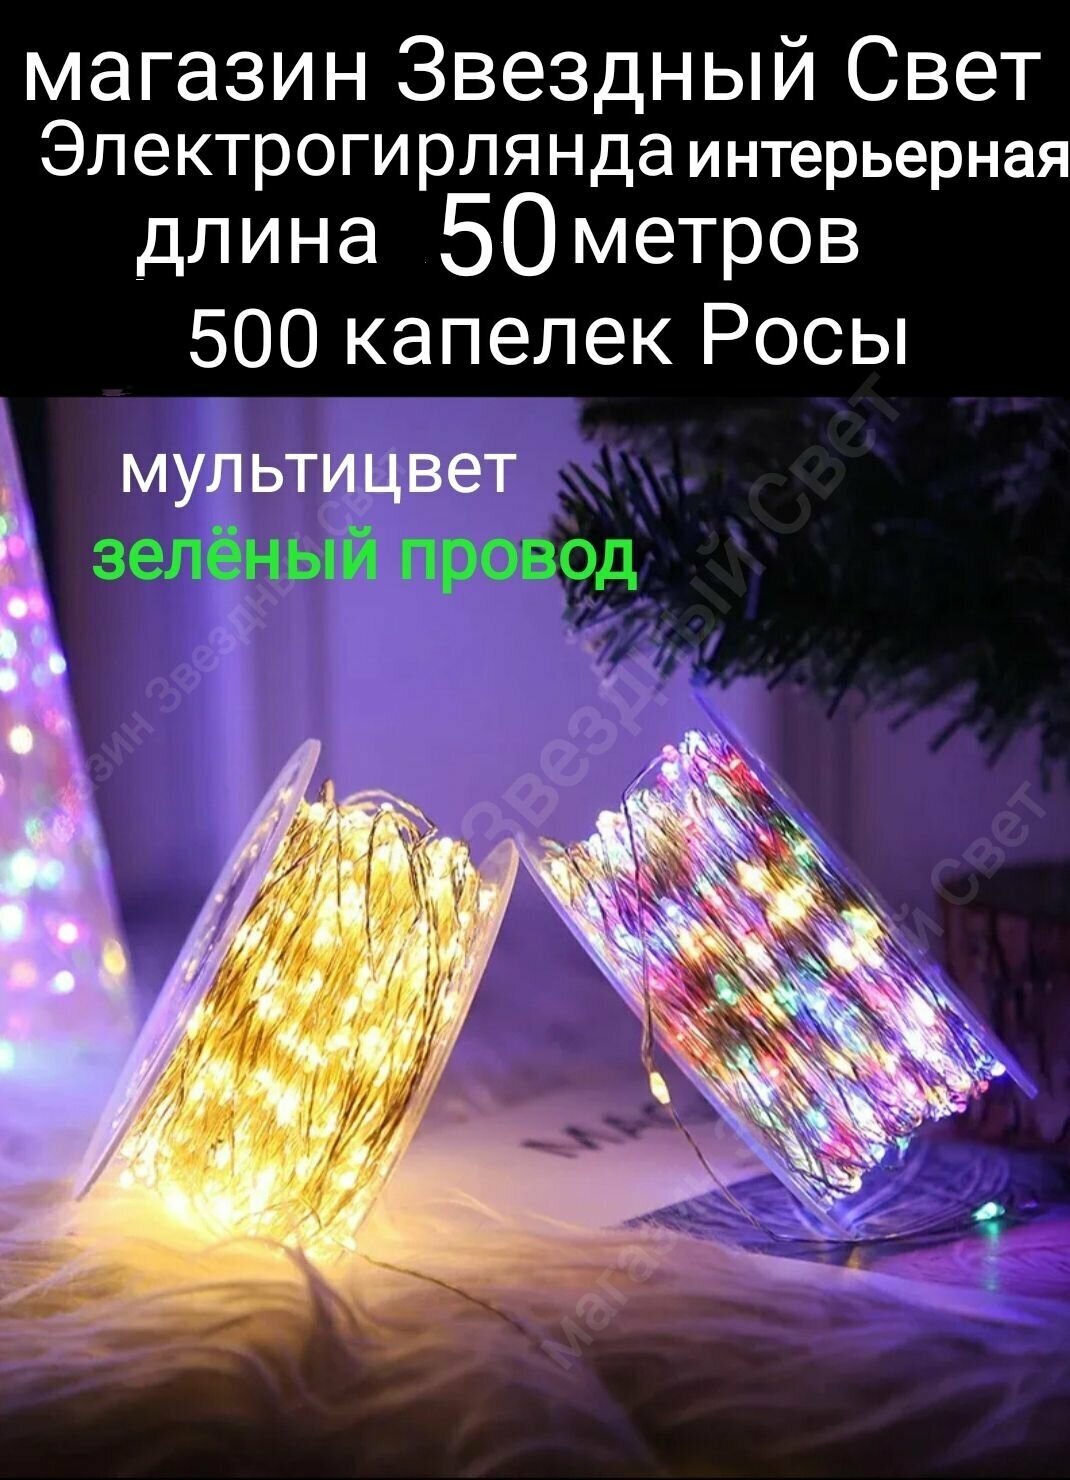 Электрогирлянда интерьерная Роса Светодиодная 500 ламп, 50м